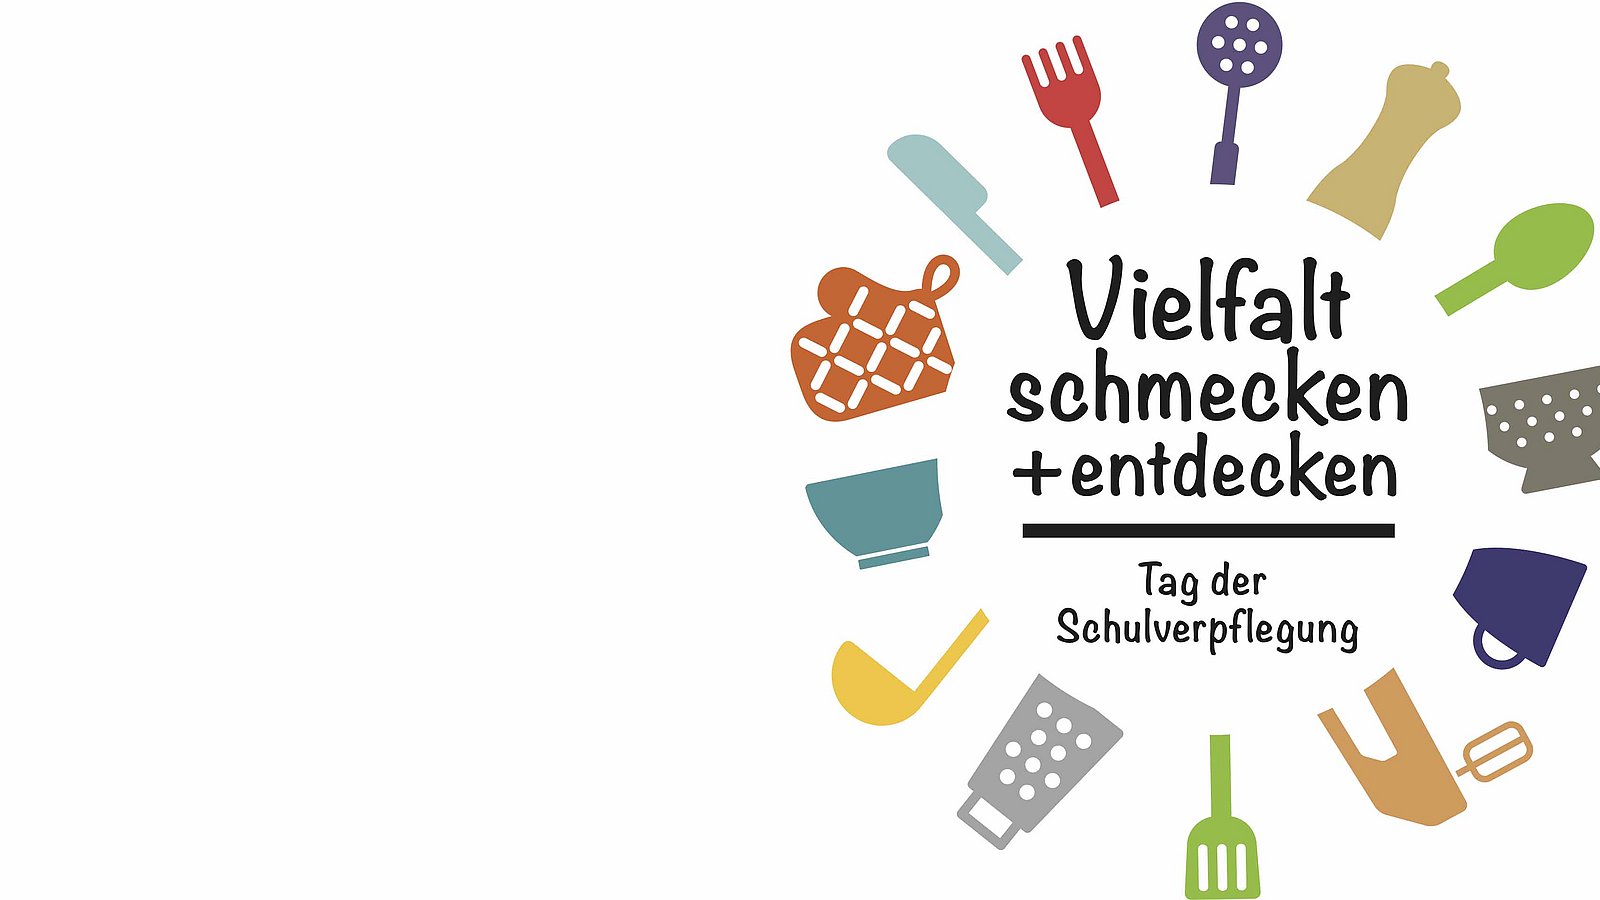 Logo Tag der Schulverpflegung 2019: "Vielfalt schmecken und entdecken / Tag der Schulverpflegung"